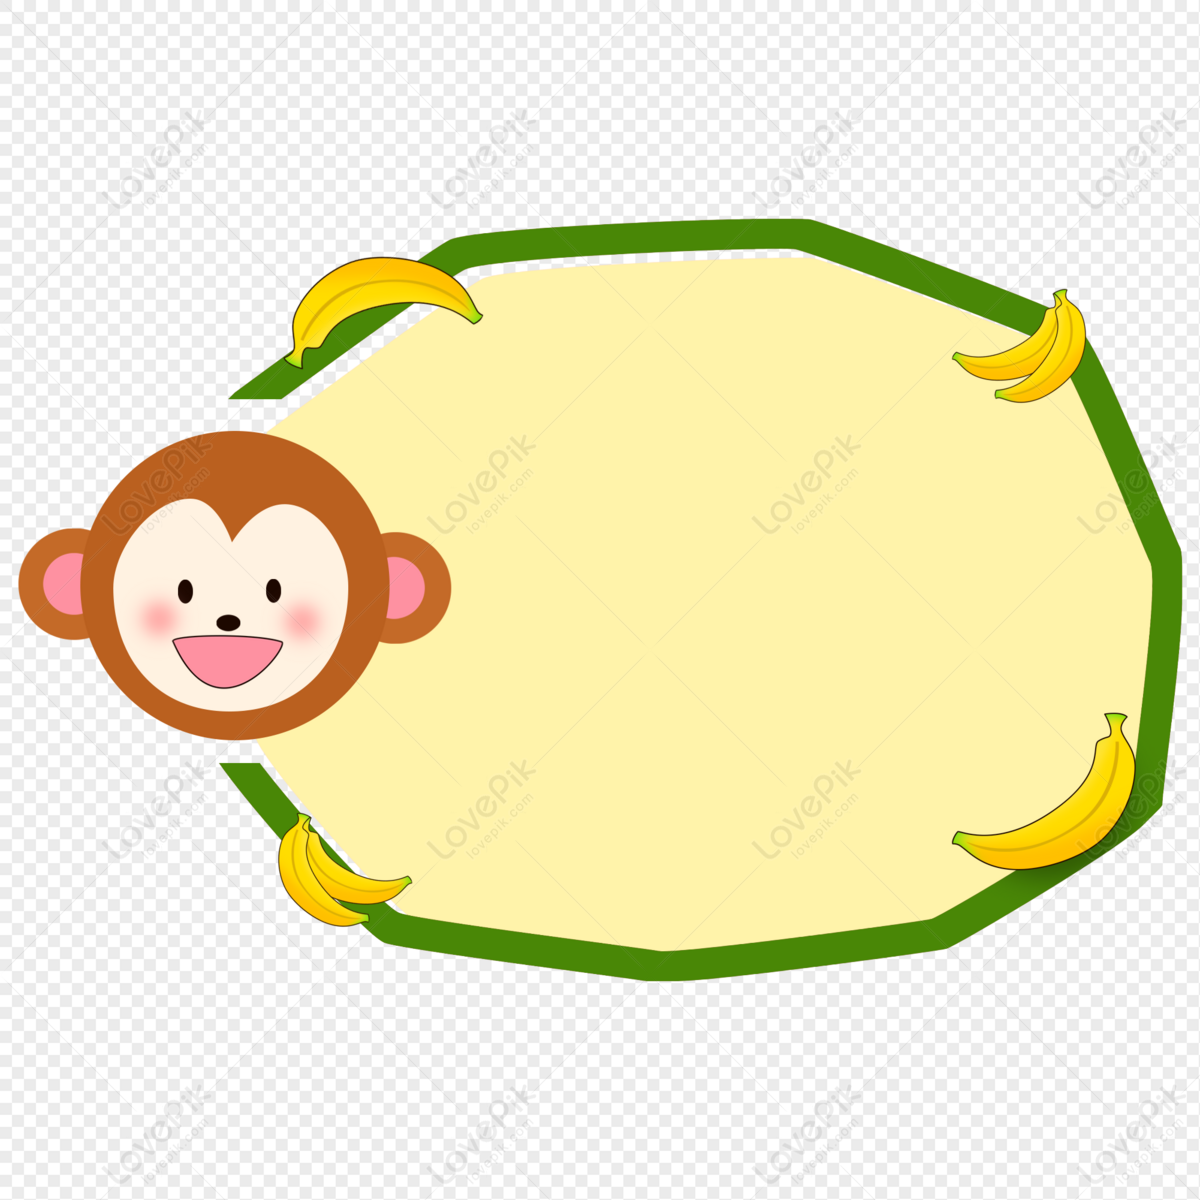 Arquivo de Macaco PNG Desenho - Páginal Inicial